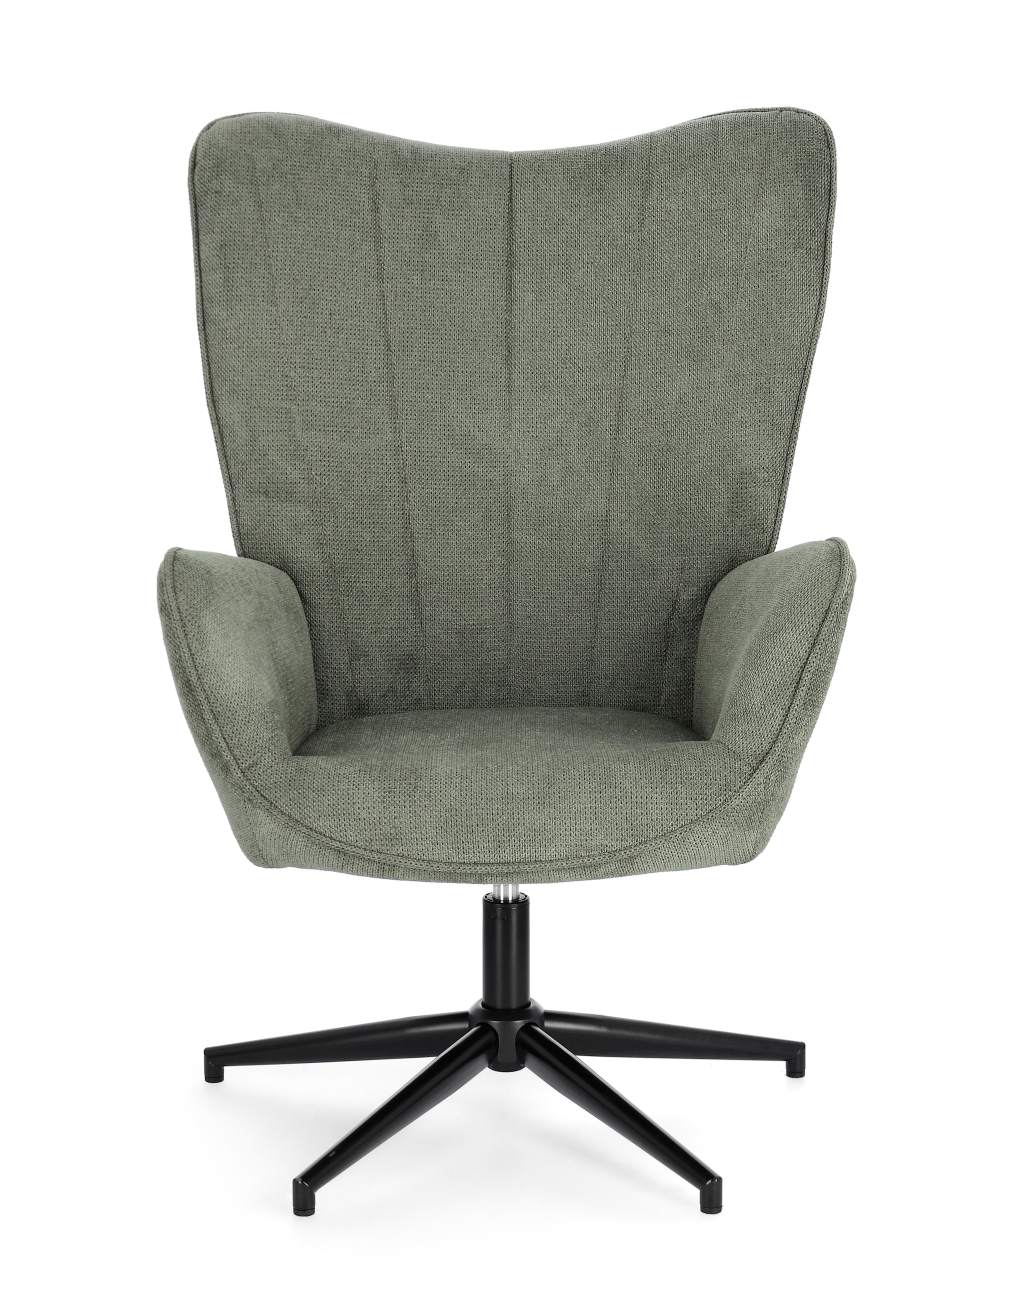 Der Drehsessel Inas überzeugt mit seinem modernen Stil. Gefertigt wurde er aus Stoff, welcher einen grünen Farbton besitzt. Das Gestell ist aus Metall und hat eine schwarze Farbe. Der Sessel besitzt eine Sitzhöhe von 50 cm.